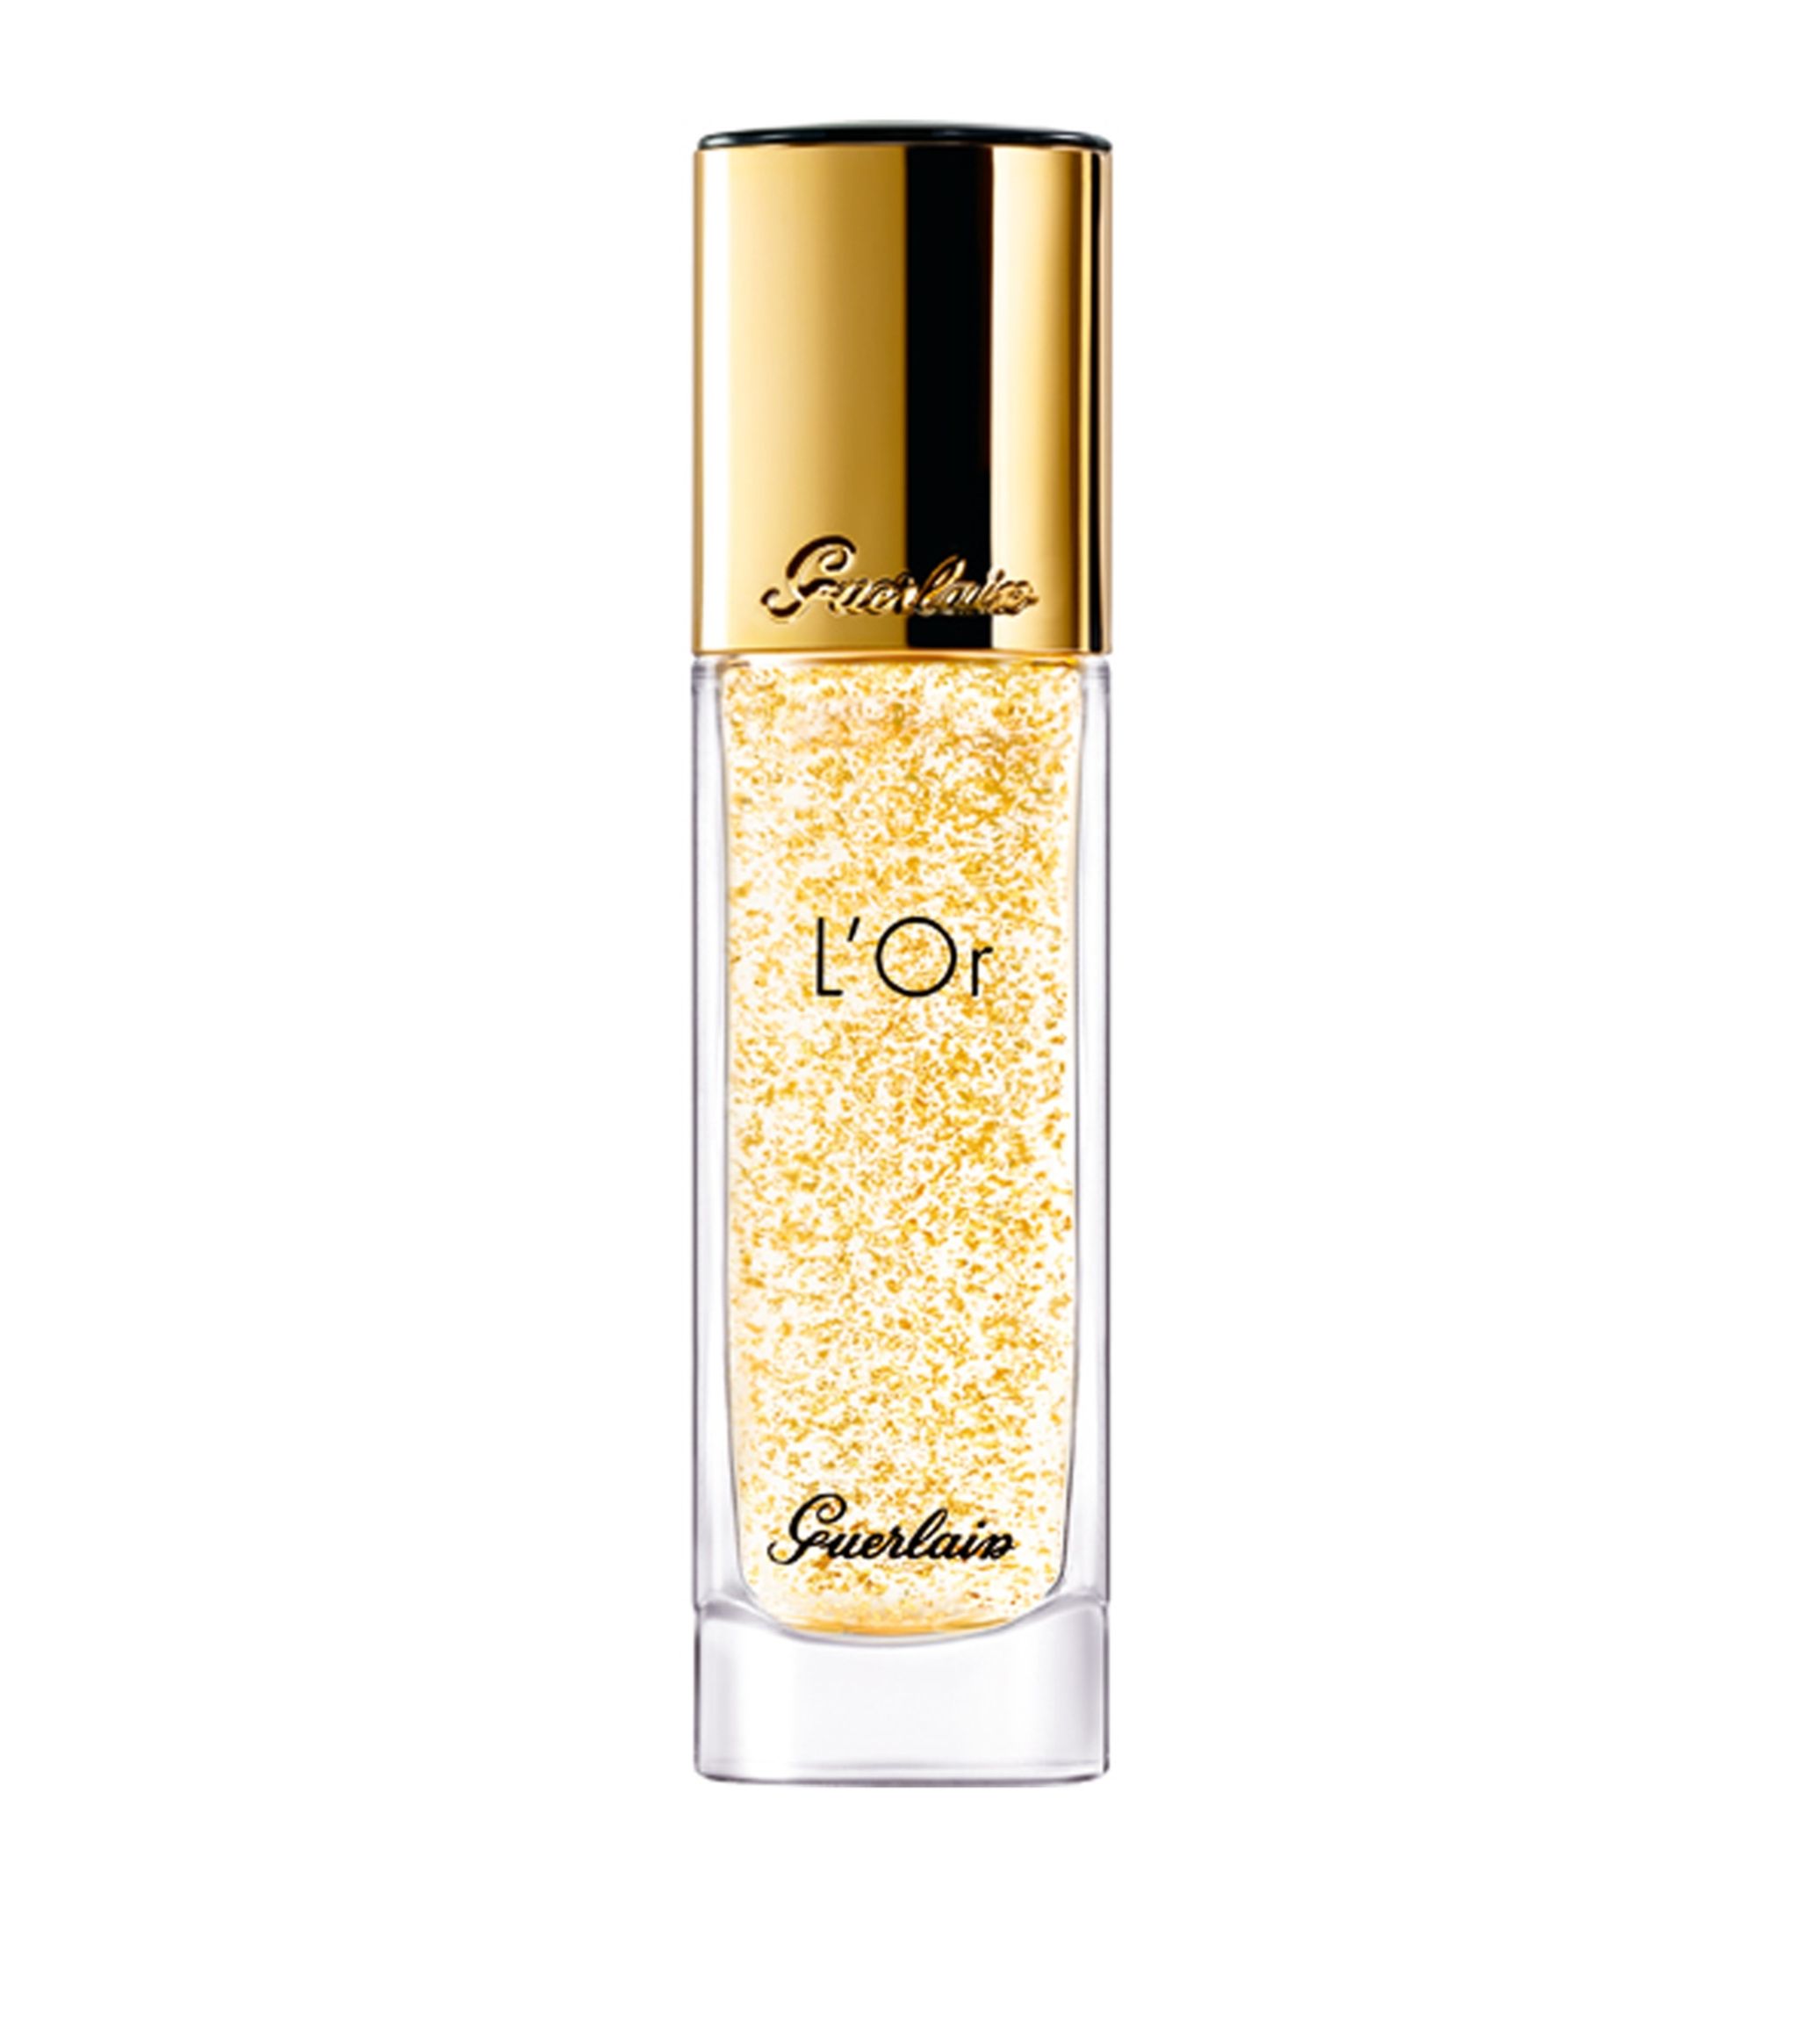 A bottle of Guerlain 24-carat gold primer designed for glowing skin.